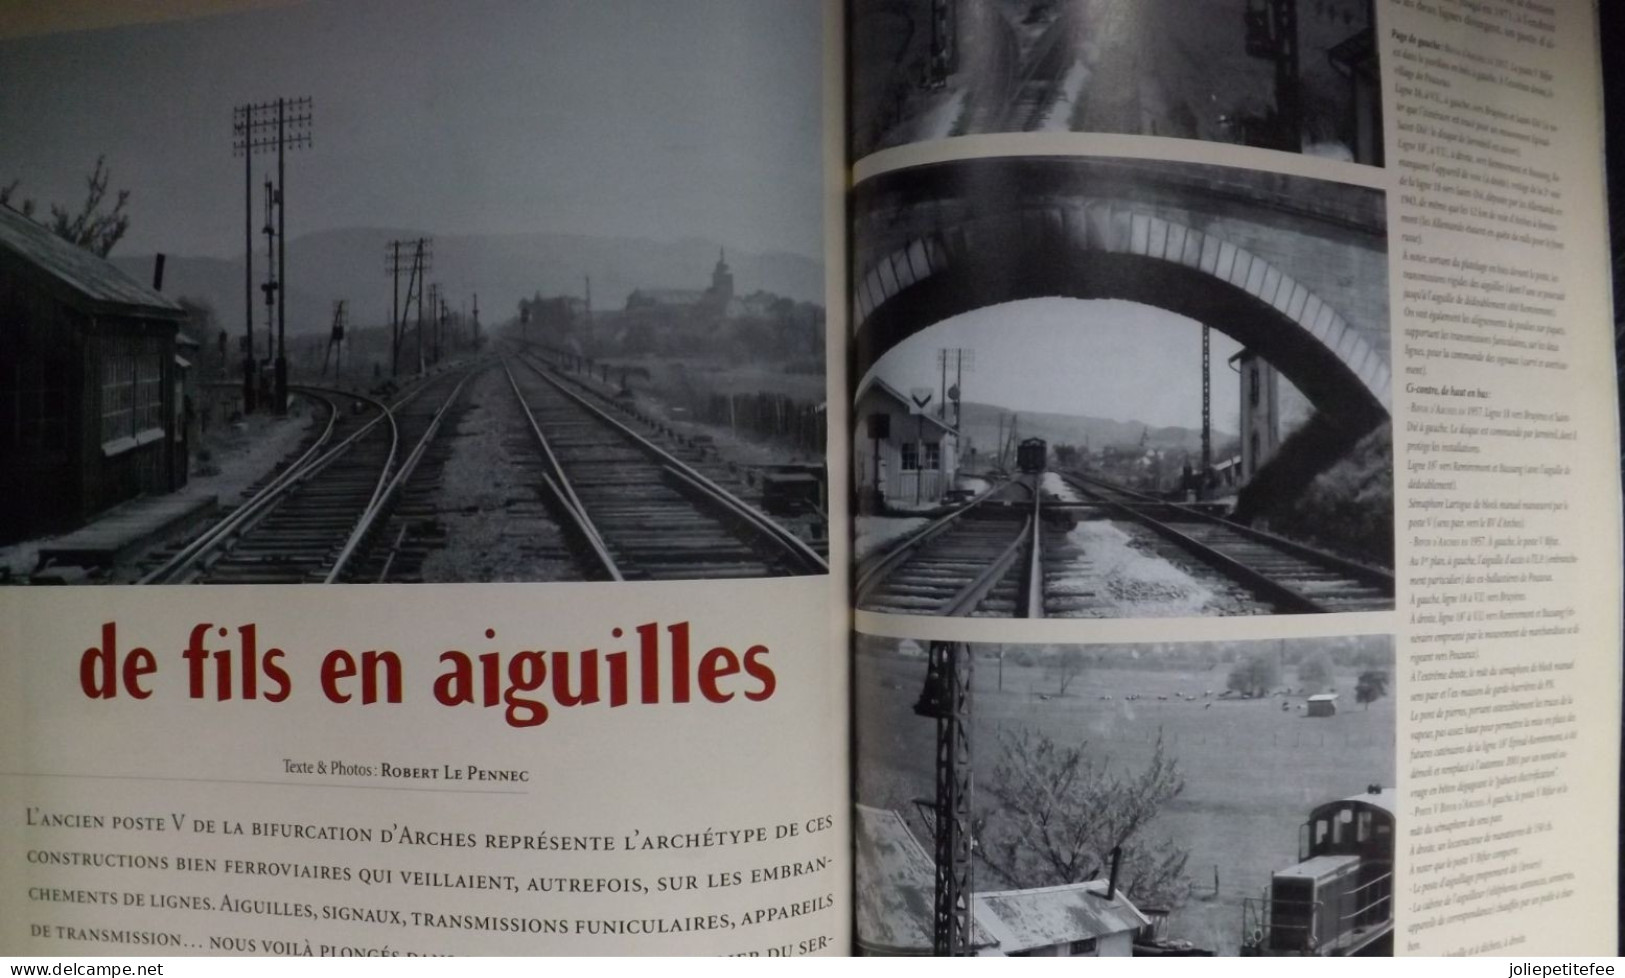 N°8 - 2003:  Revue. CORRESPONDANCES FERROVIAIRES. Itinéraire: La Banlieu PLM. - Eisenbahnen & Bahnwesen